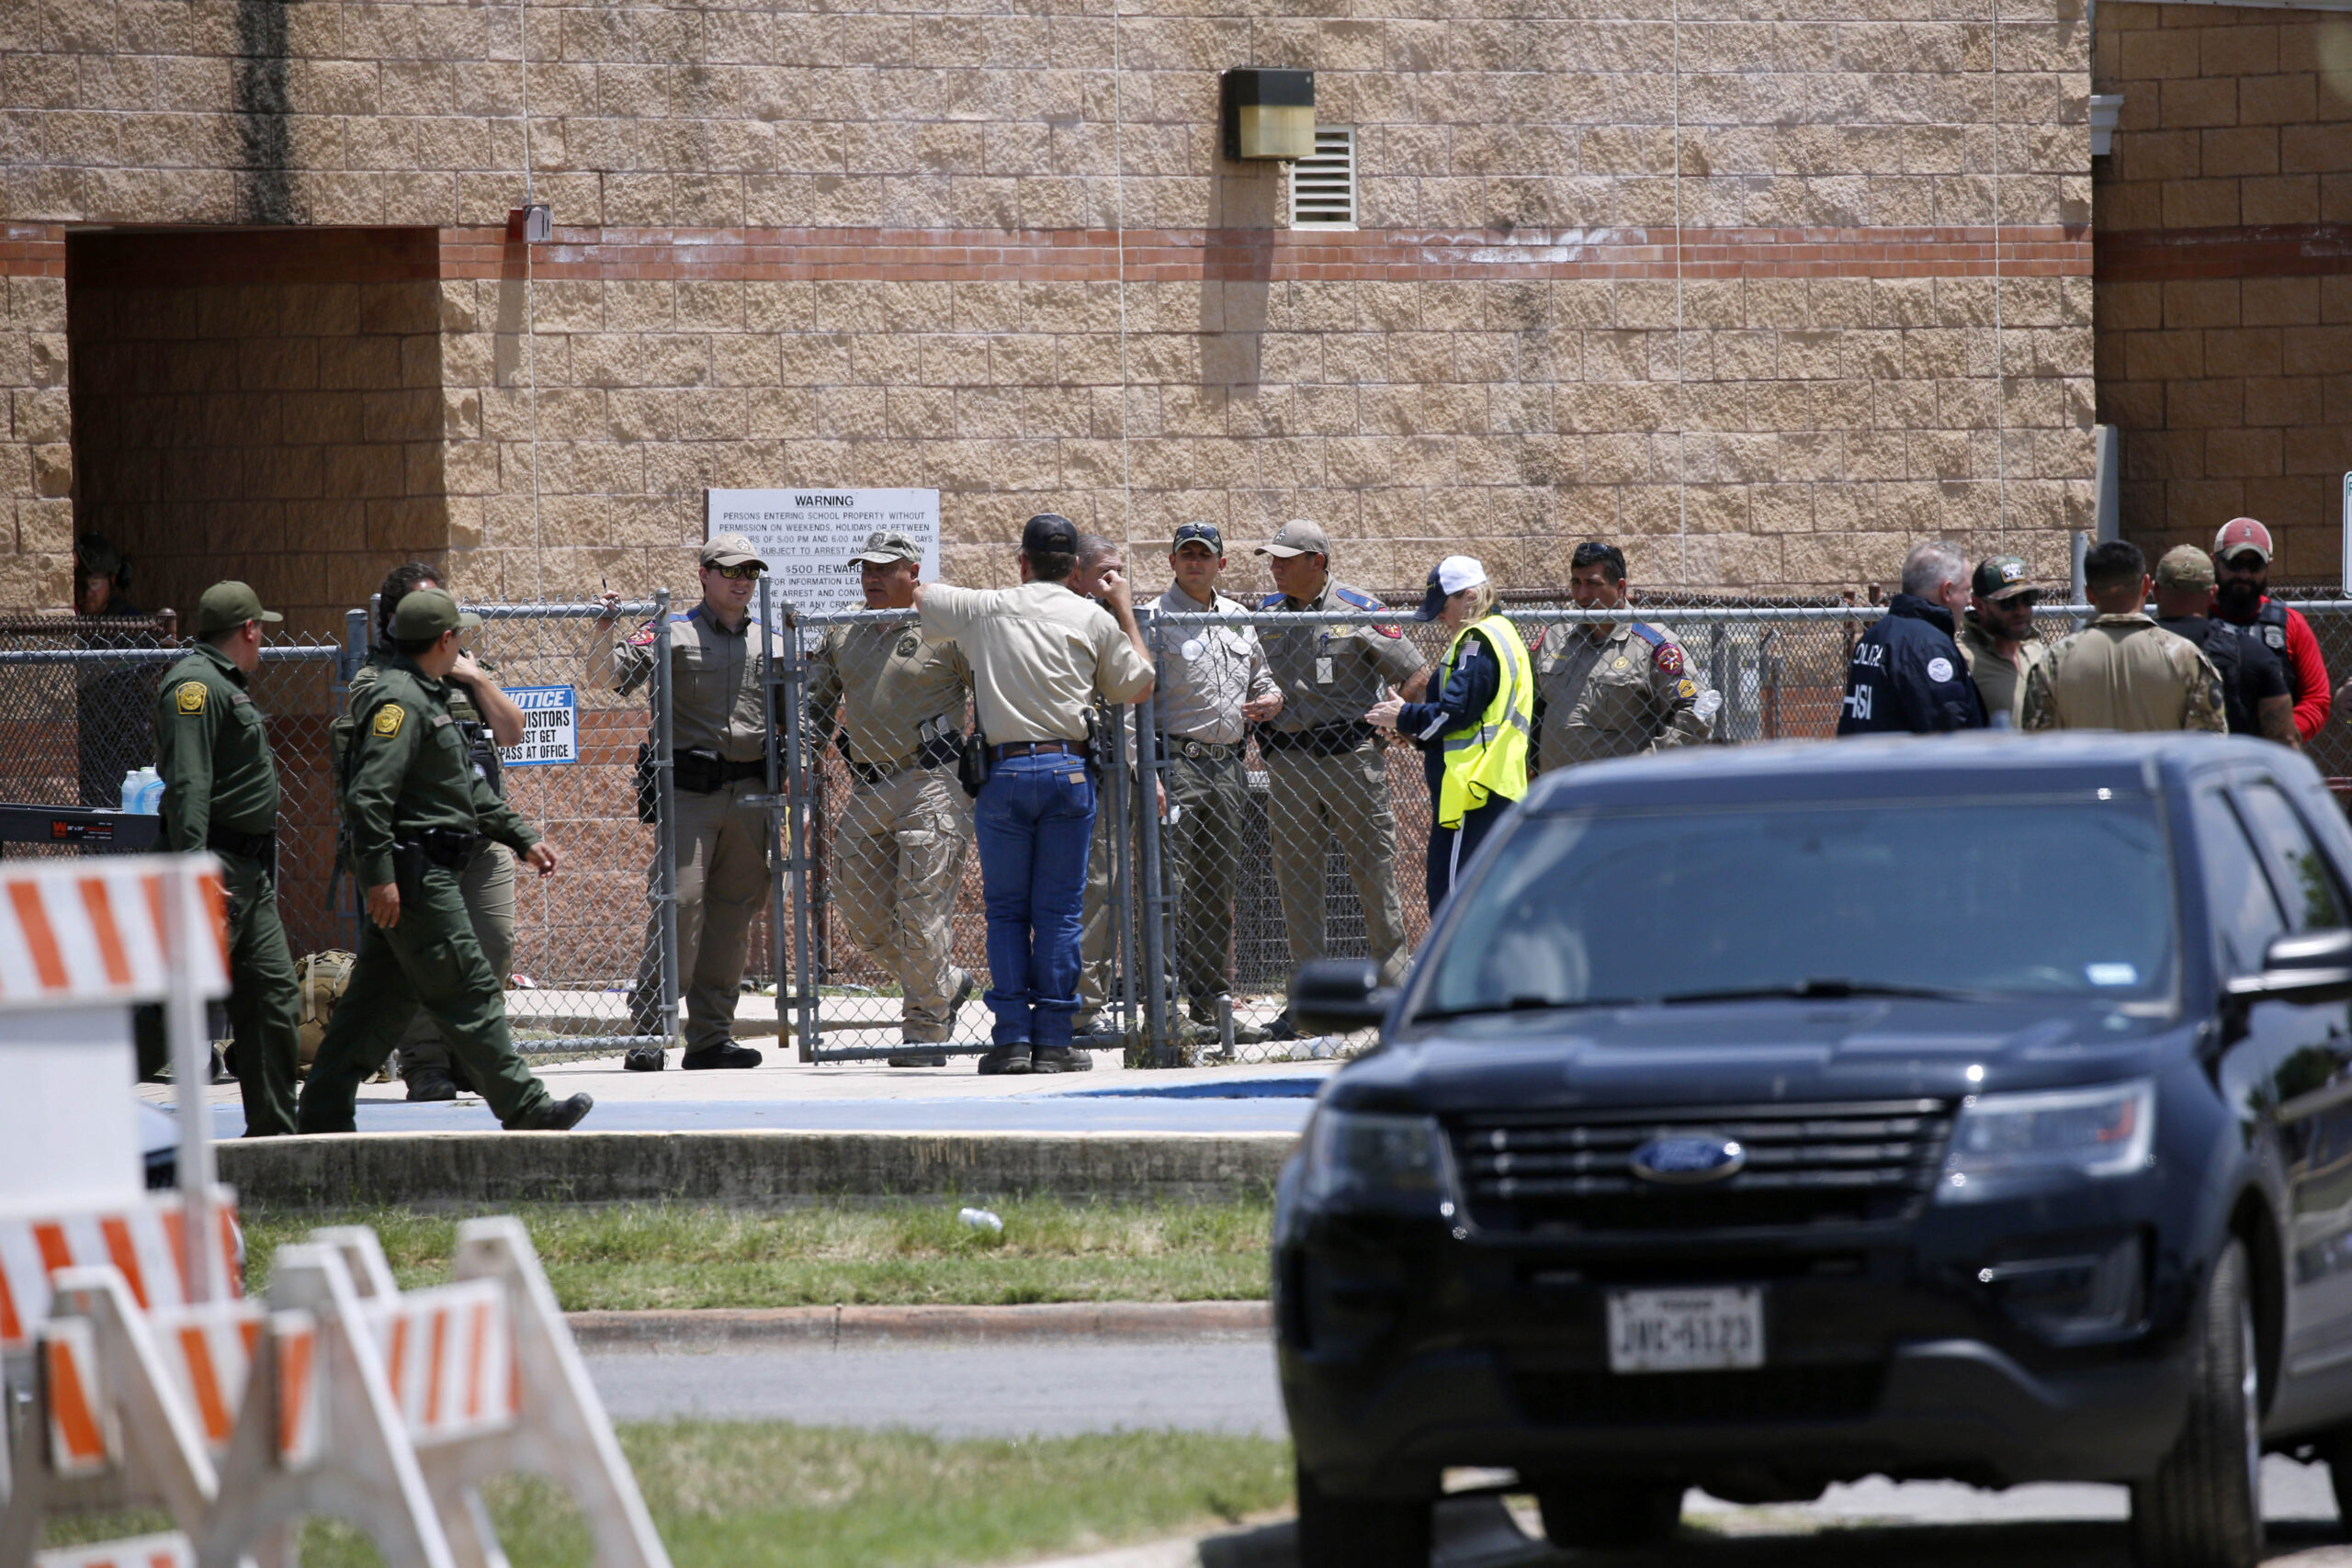 Sparatoria in una scuola del Texas, morti 19 bambini e 2 insegnanti – FOTOGALLERY